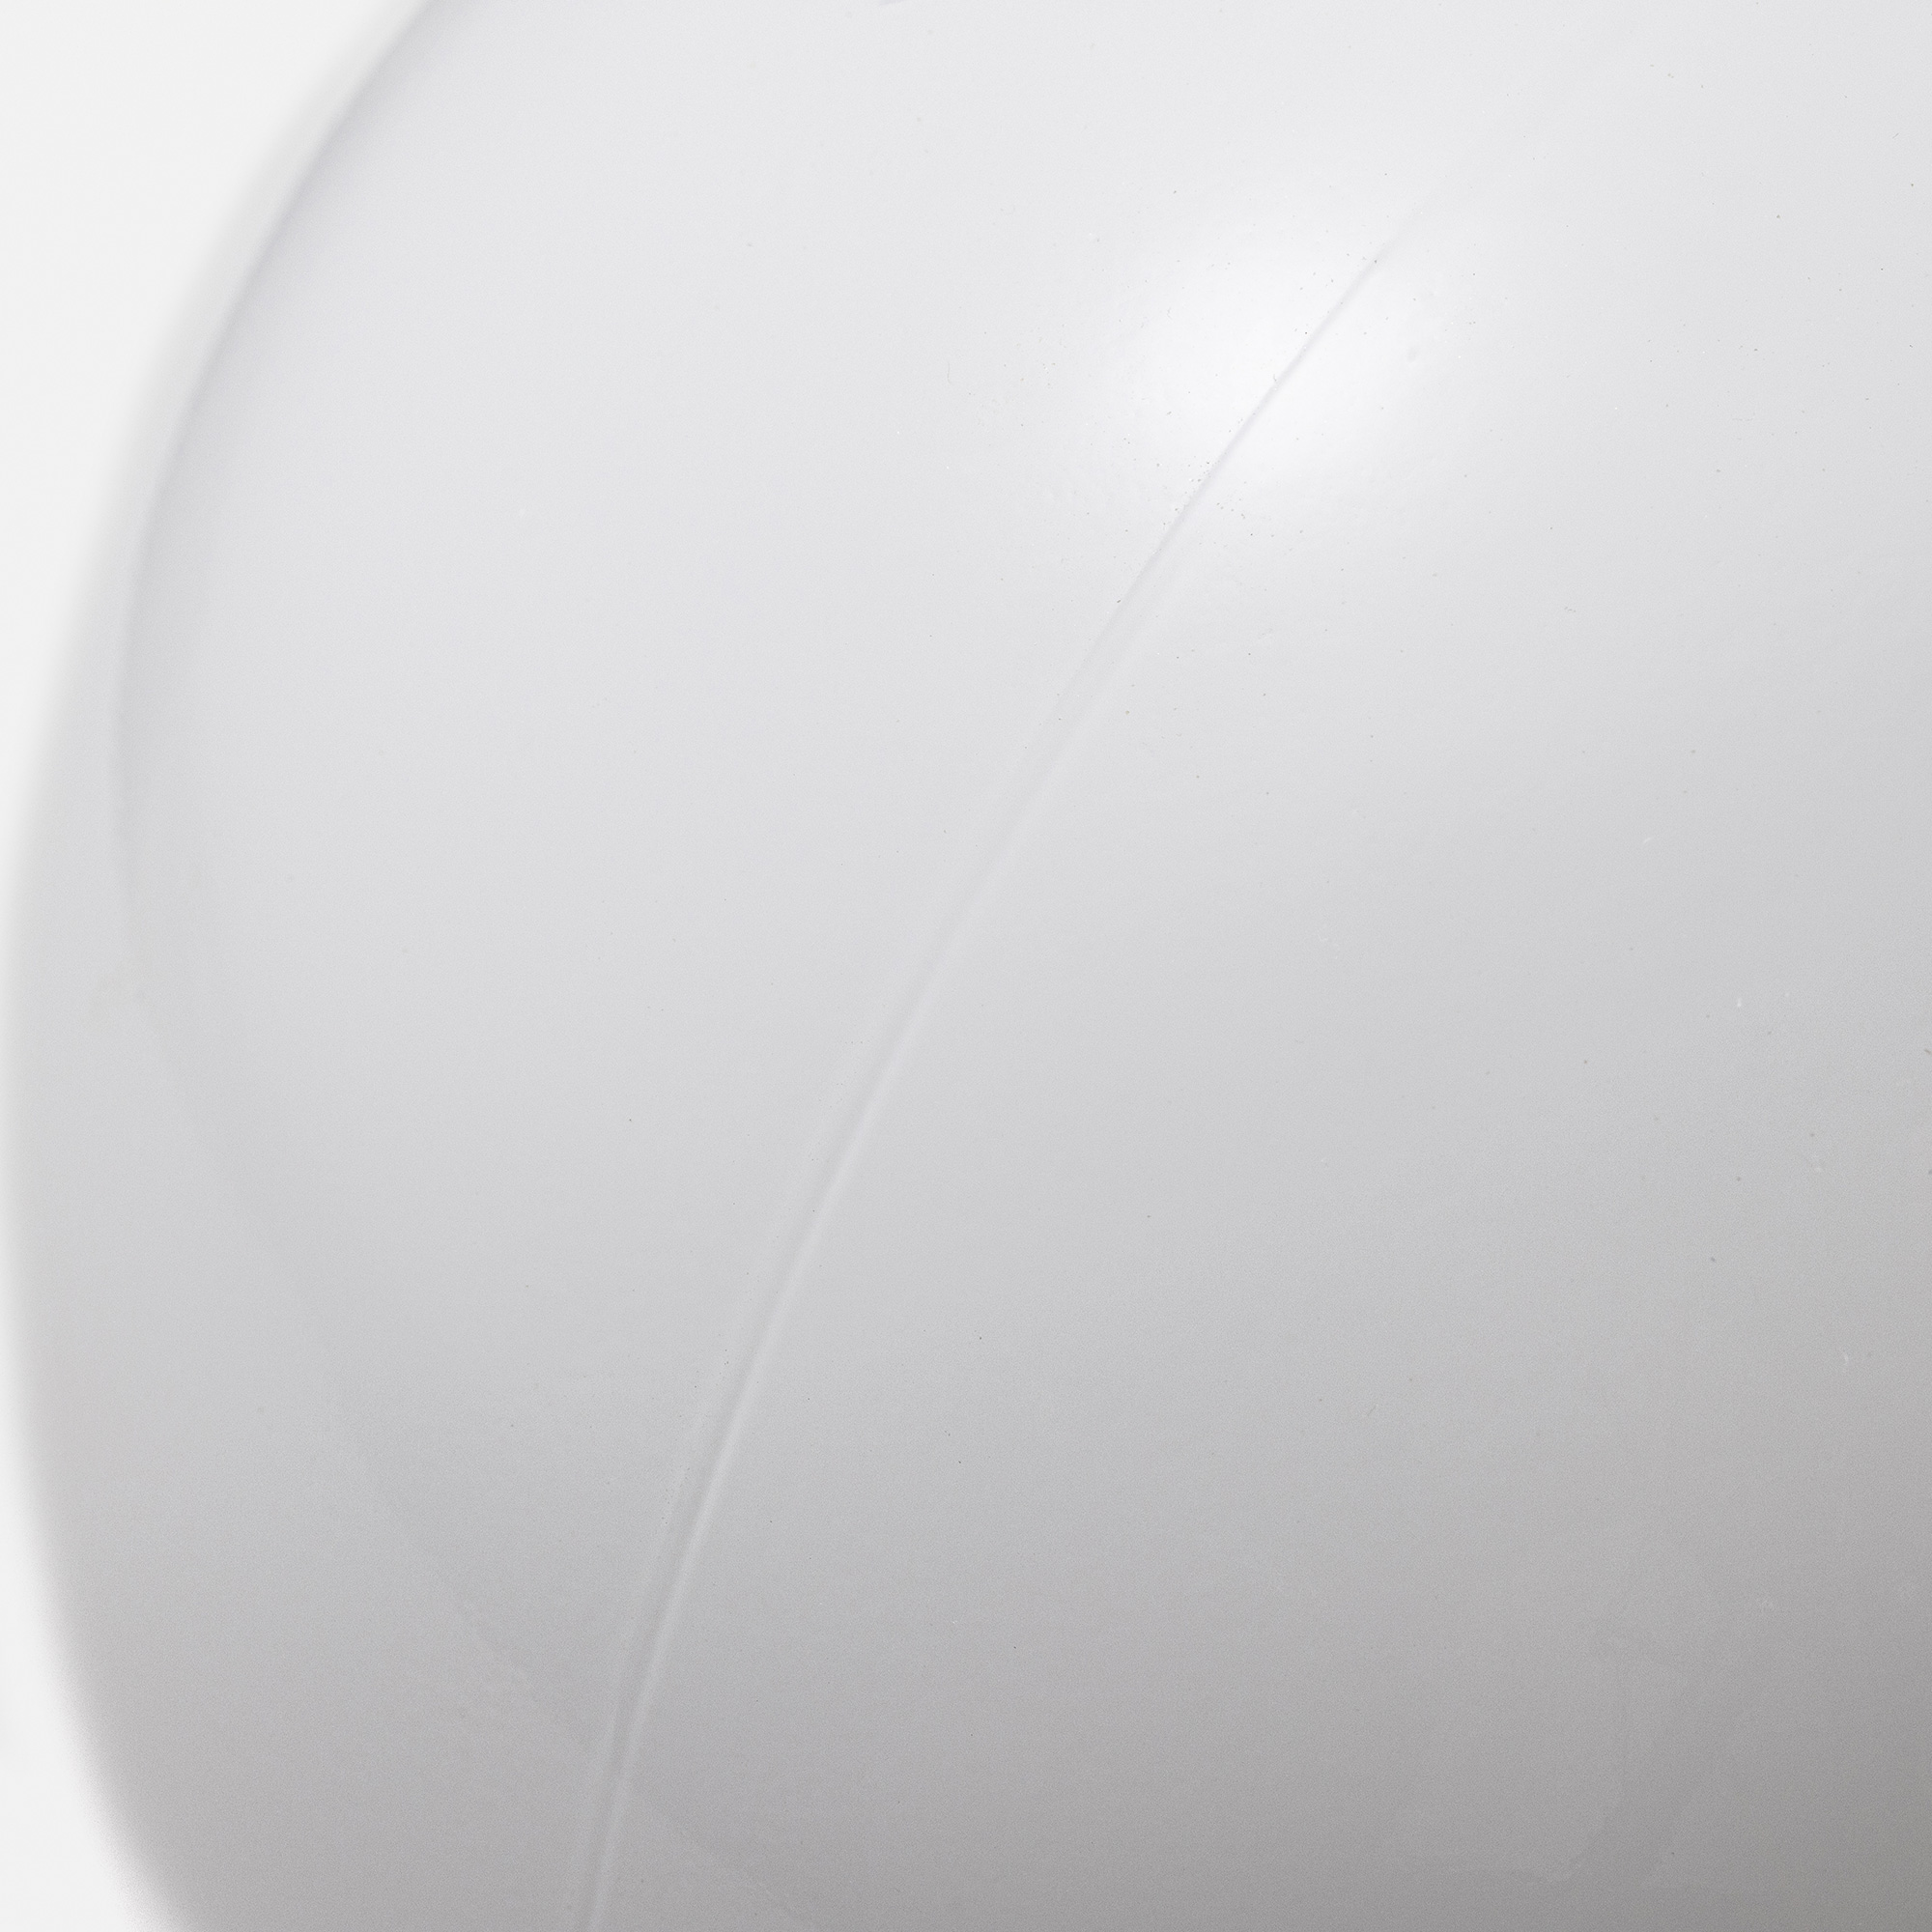 メタルラウンジライト アルミ 乳白ボール（直付） LT-BR018-03-G141 ガラスグローブには成型上、縦か横に薄く接合時のラインができます